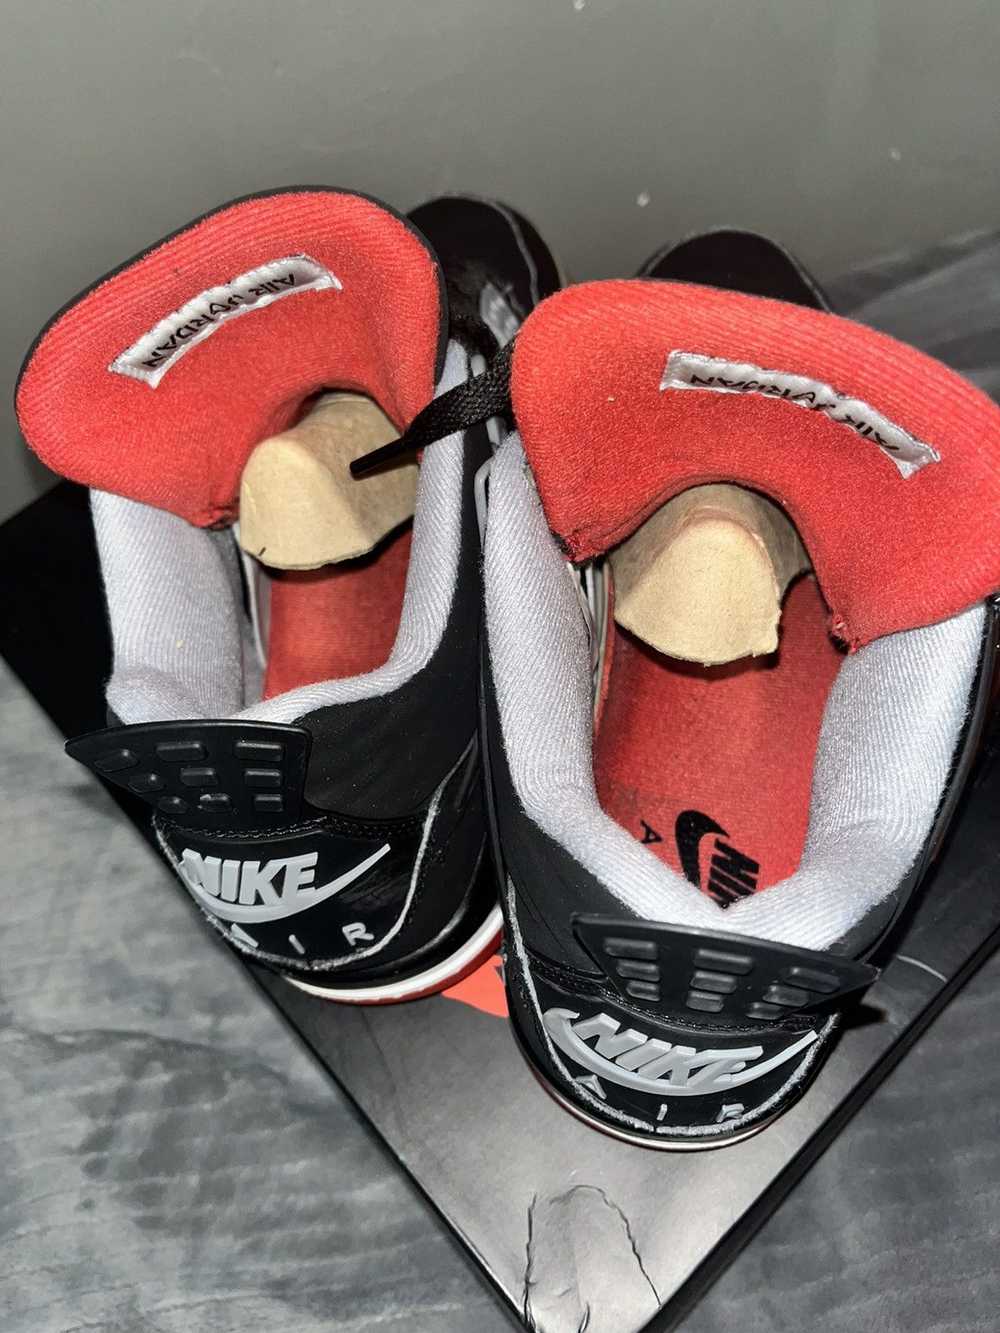 Jordan Brand × Nike Air Jordan retro 4 bred - image 9